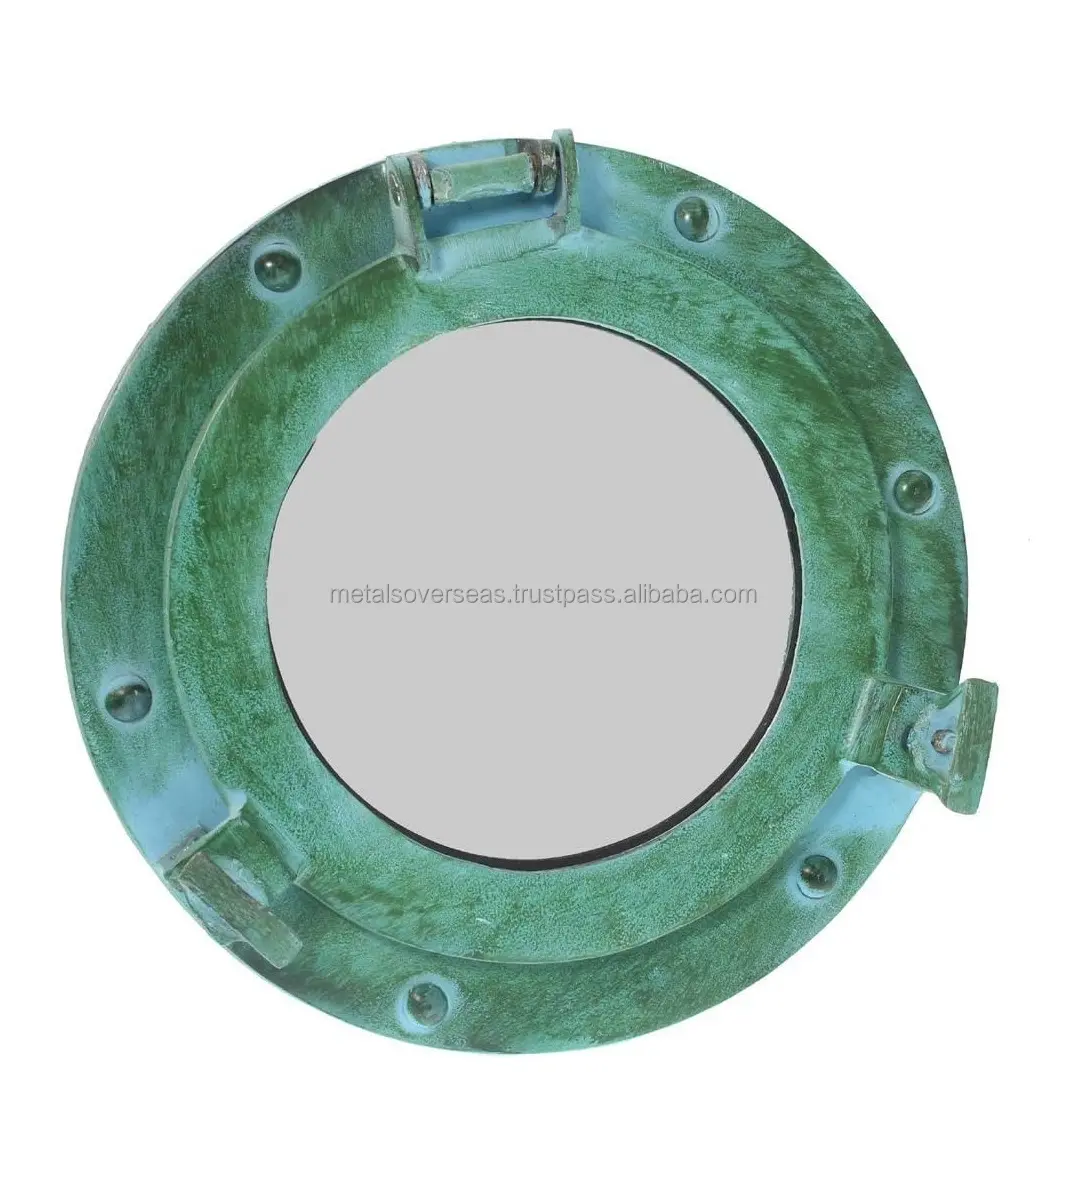 wholesale price Aluminum Porthole Mirror with Green Finished Nautical Ship Decor